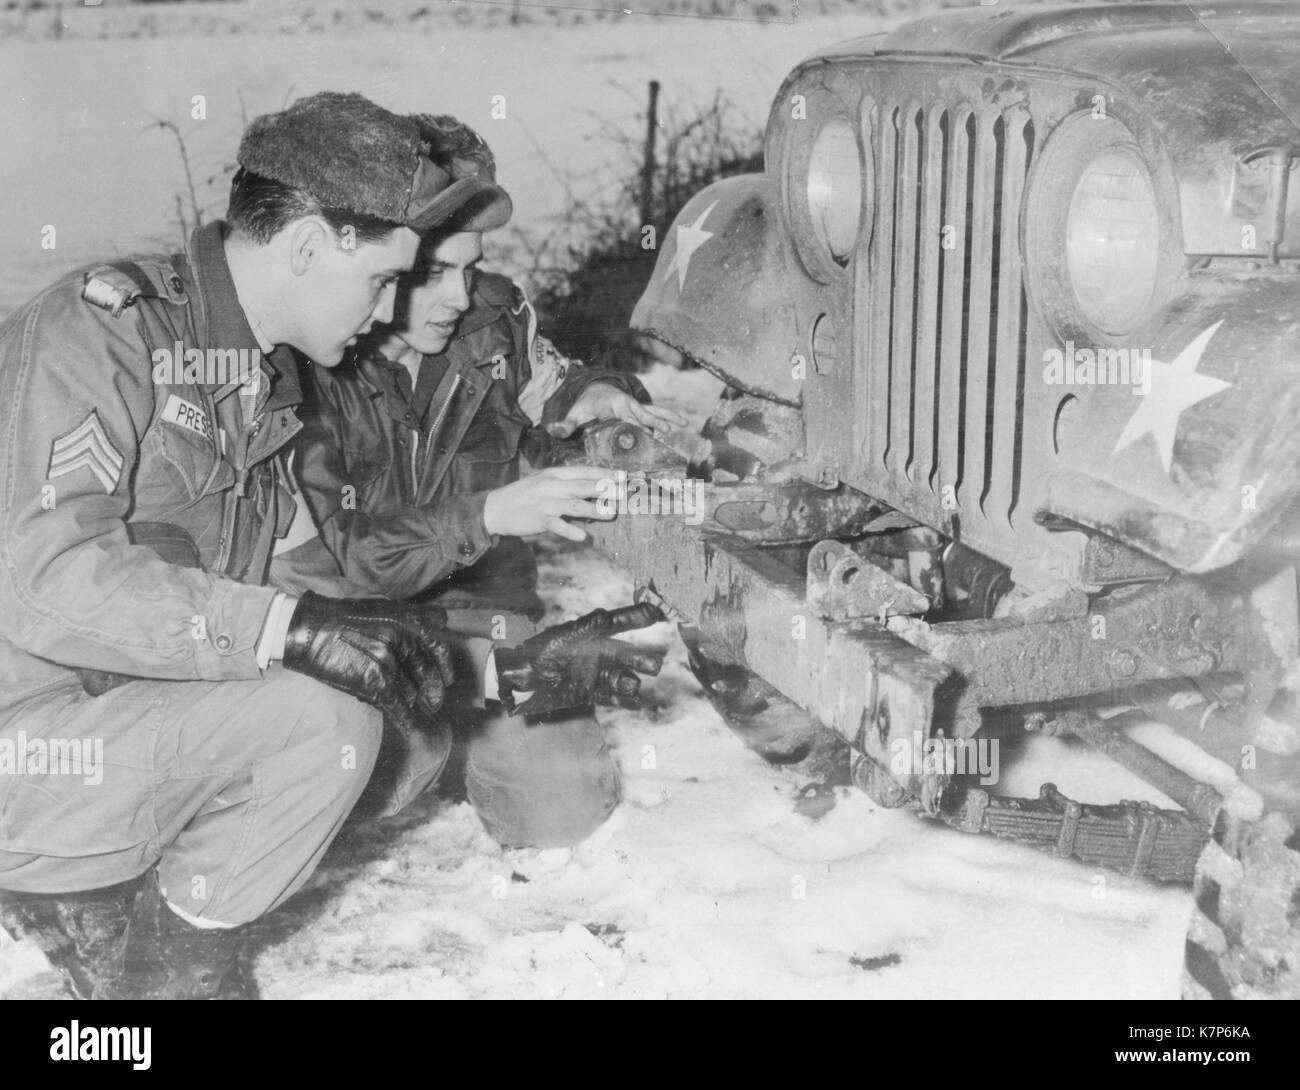 1960 - Le Sgt Elvis Presley vérifie avec d'autres armures jeep 32e scout Pvt Lonnie Wolfe, conducteur de Presley's jeep. Banque D'Images